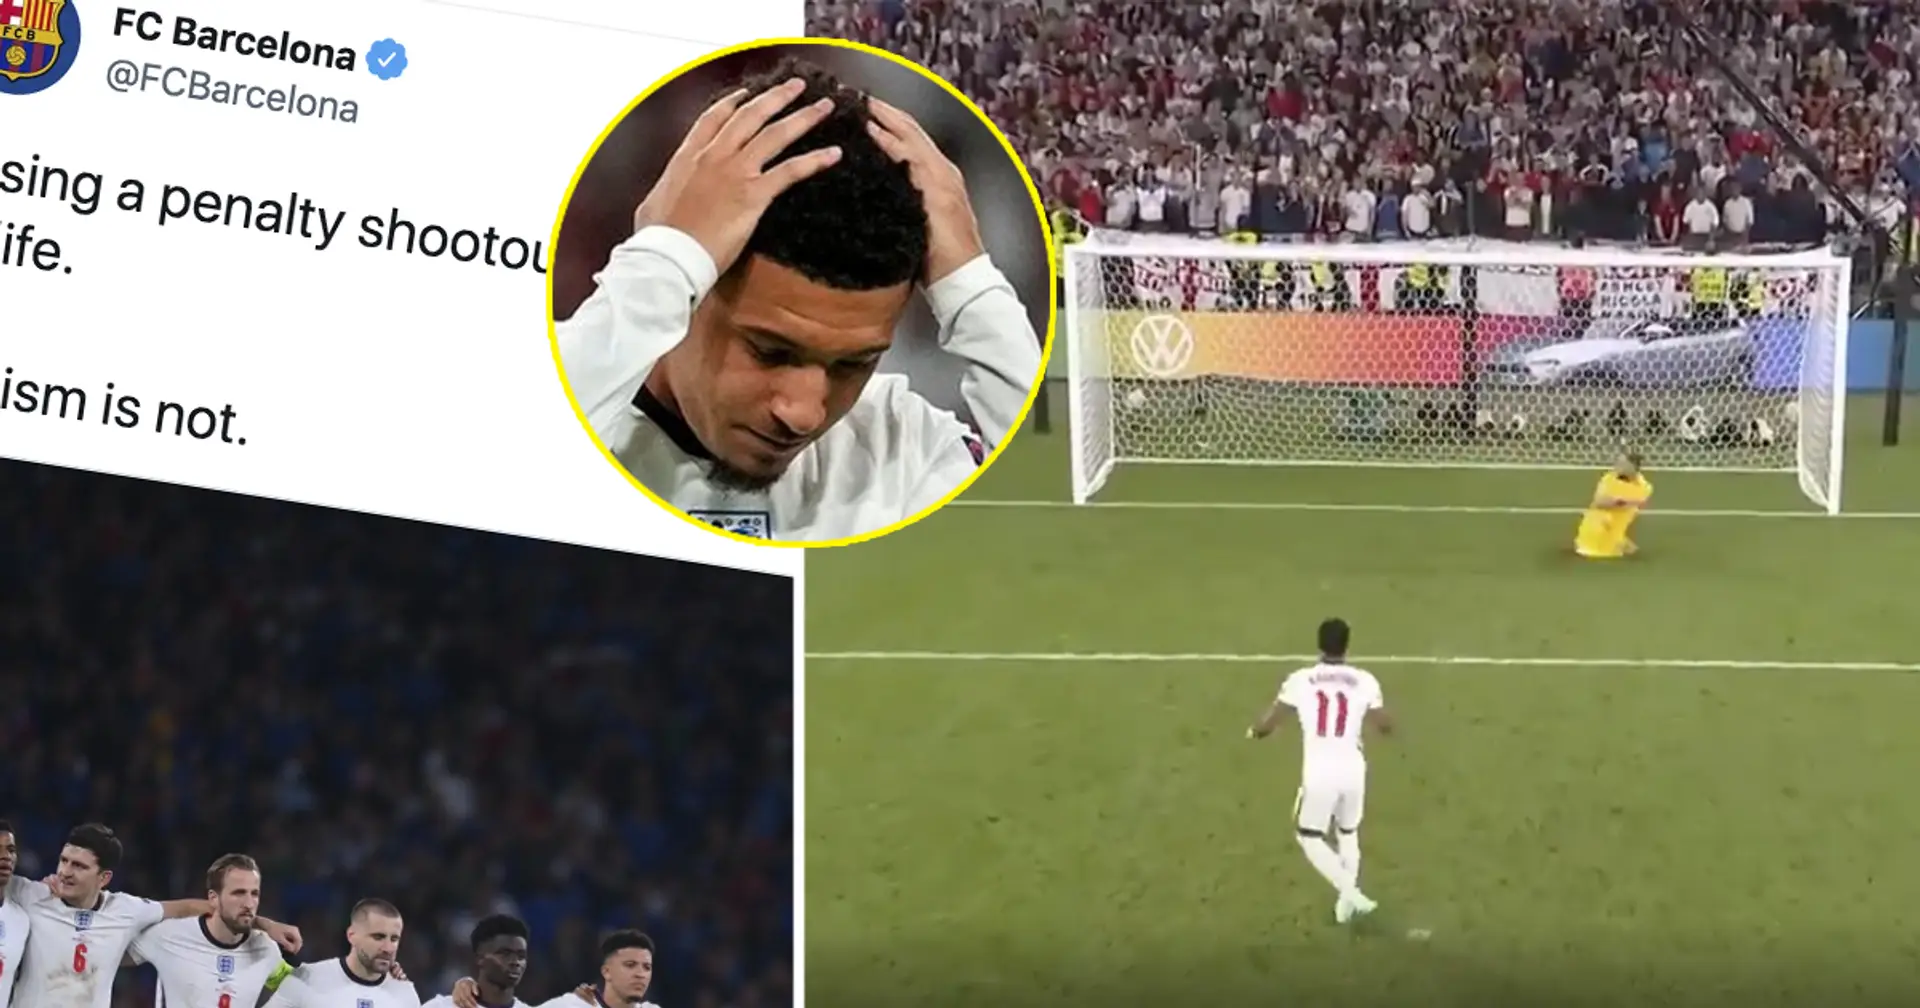 "Mon club", "respect fou": la brillante réaction de Barcelone face aux insultes racistes contre des joueurs anglais après la finale de l'Euro 2020